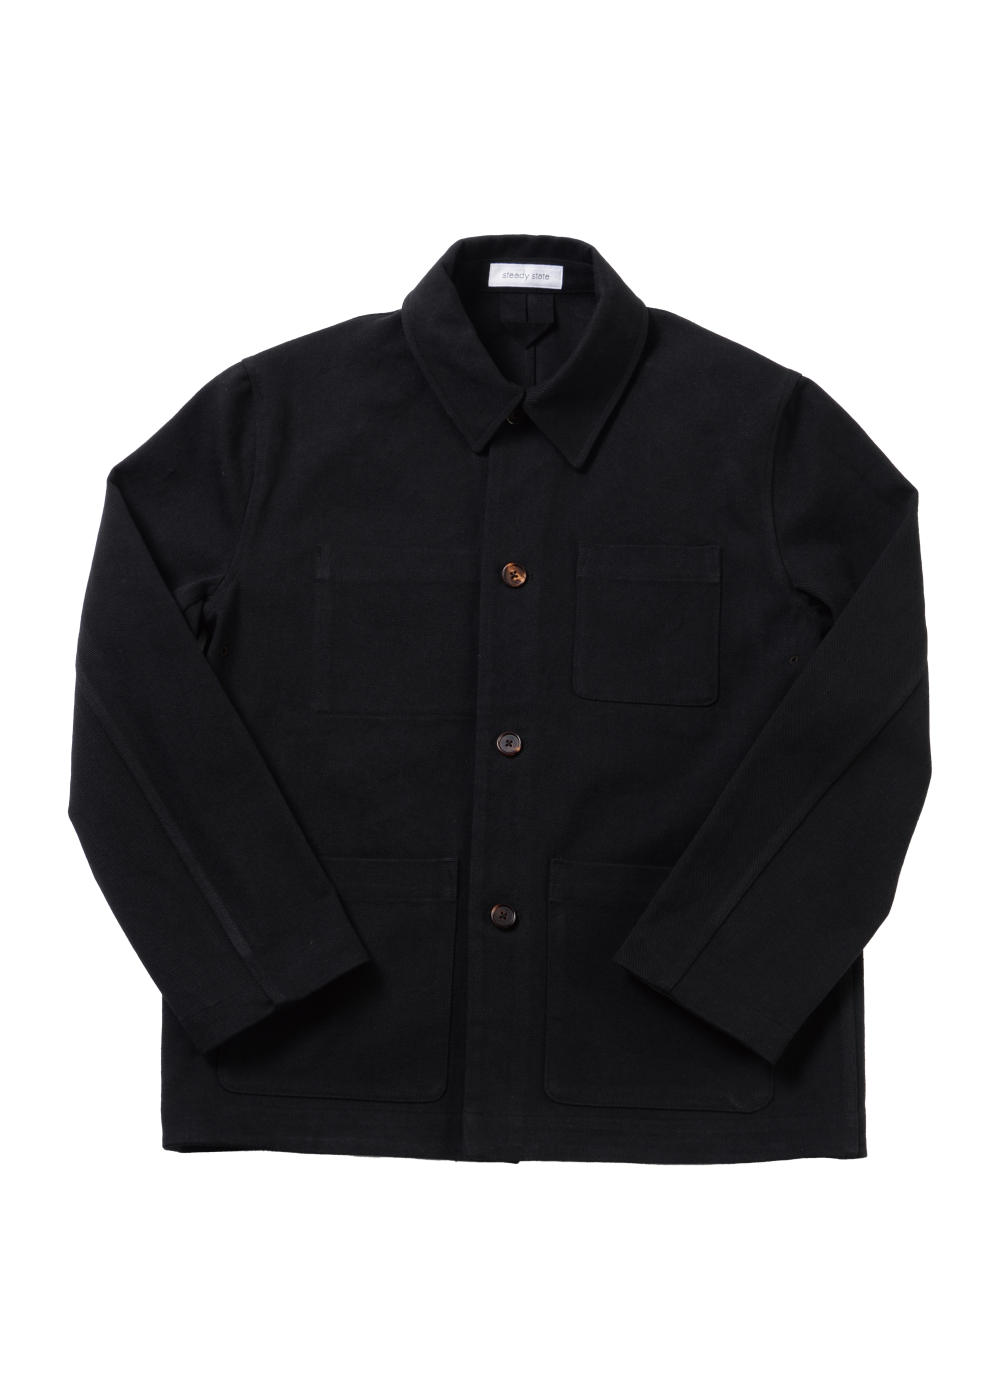 Chore Jacket Black